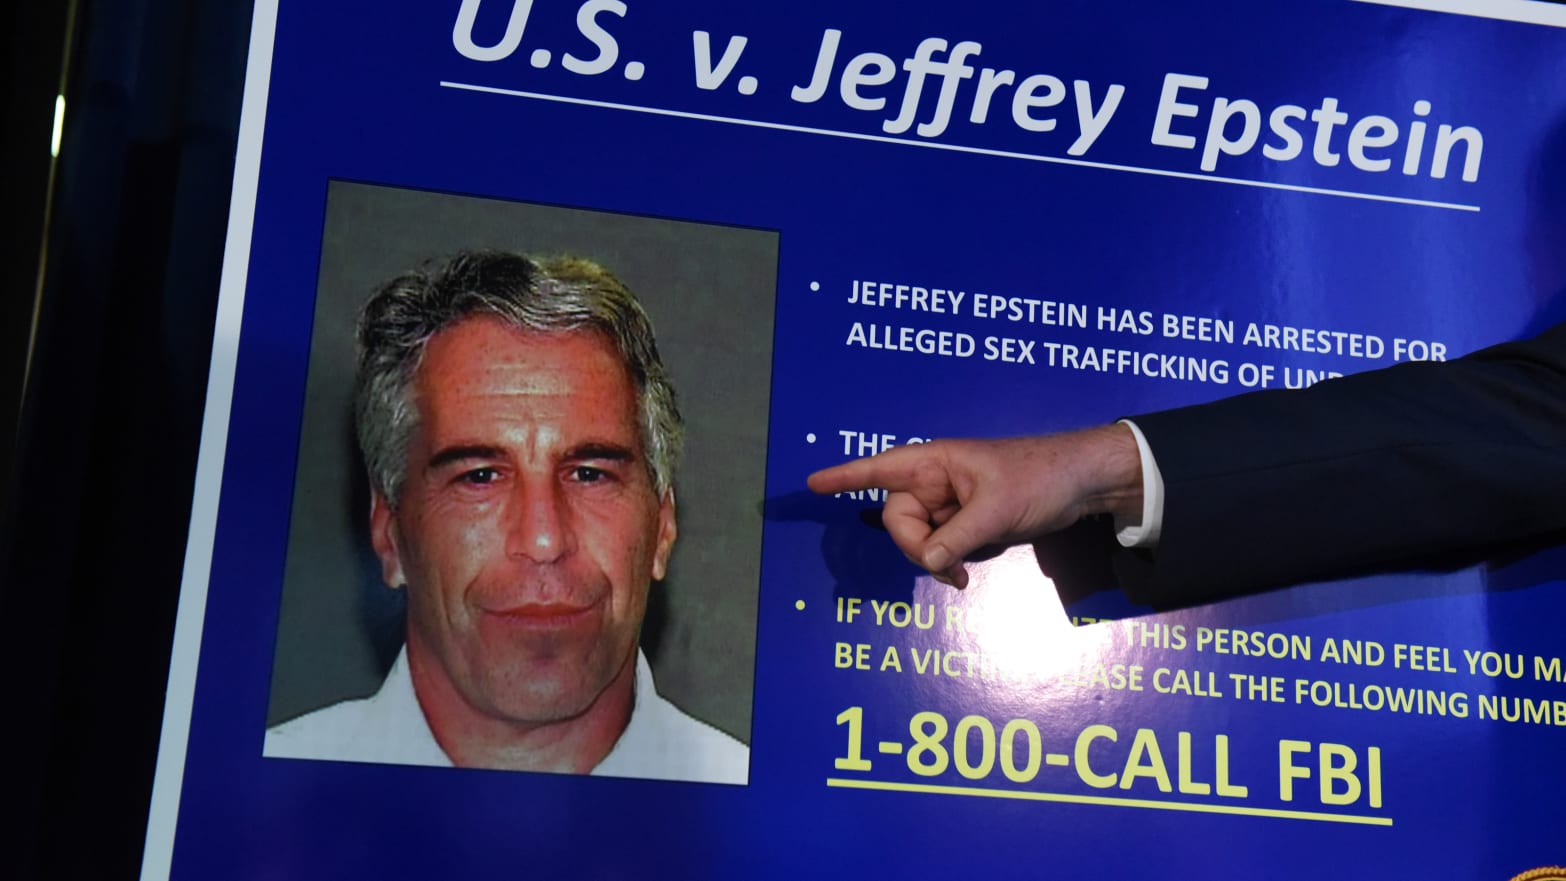 Jeffery Epstein died in a Manhattan prison cell in 2019.